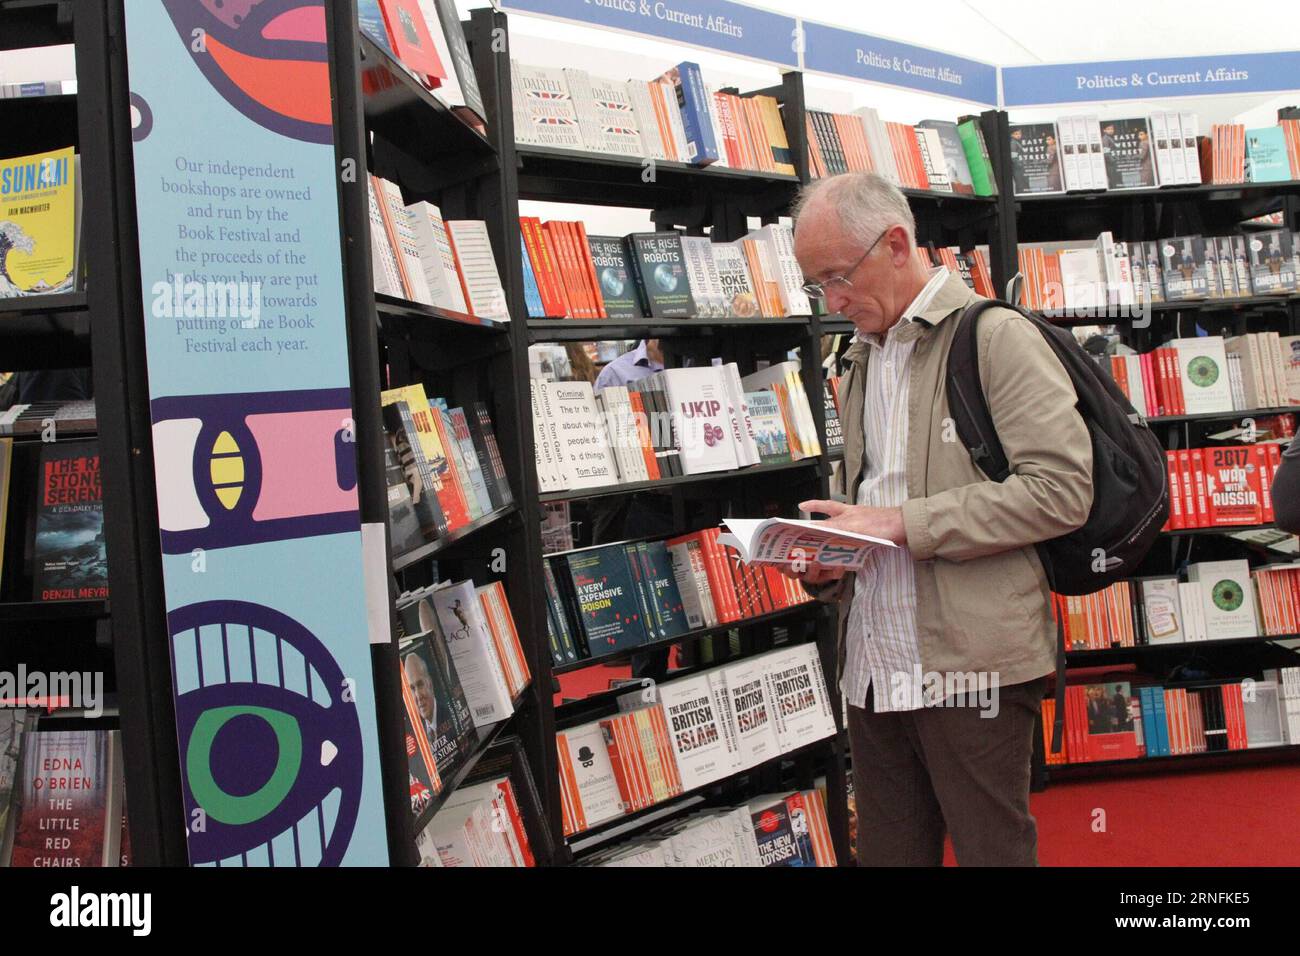 (160814) -- EDINBURGH, 13. August 2016 -- Ein Mann liest Ein Buch beim Edinburgh International Book Festival 2016 in Einburgh, Großbritannien, am 13. August 2016. Das Edinburgh International Book Festival 2016 wurde am Samstag unter dem Motto Imagine Better eröffnet, um Menschen zu ermutigen, Ideen auszutauschen und eine bessere Welt vorzustellen. ) (Syq) GROSSBRITANNIEN-EDINBURGH-INTERNATIONALES BUCH-FESTIVAL GuoxChunju PUBLICATIONxNOTxINxCHN 160814 Edinburgh 13. August 2016 ein Mann liest ein Buch BEIM Edinburgh International Book Festival 2016 in Großbritannien AM 13. August 2016 eröffnete das Edinburgh International Book Festival 2016 AM Samstag Under Stockfoto